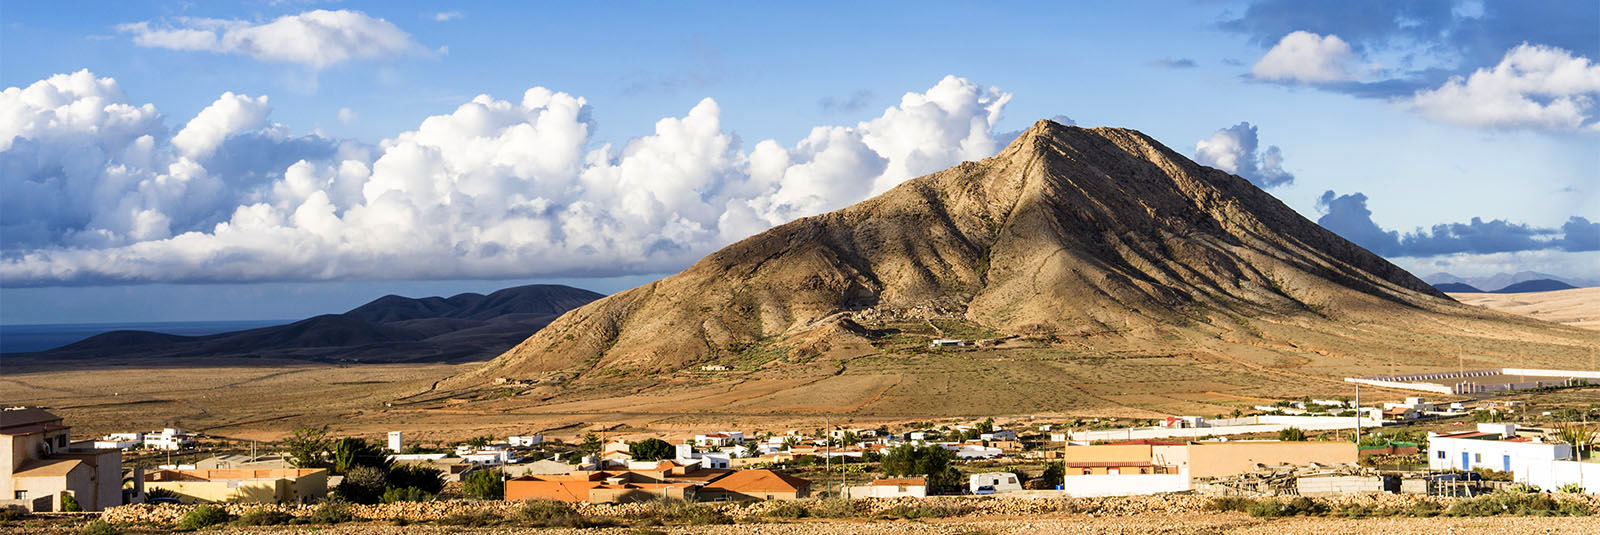 Einkaufen Fuerteventura: Tindaya